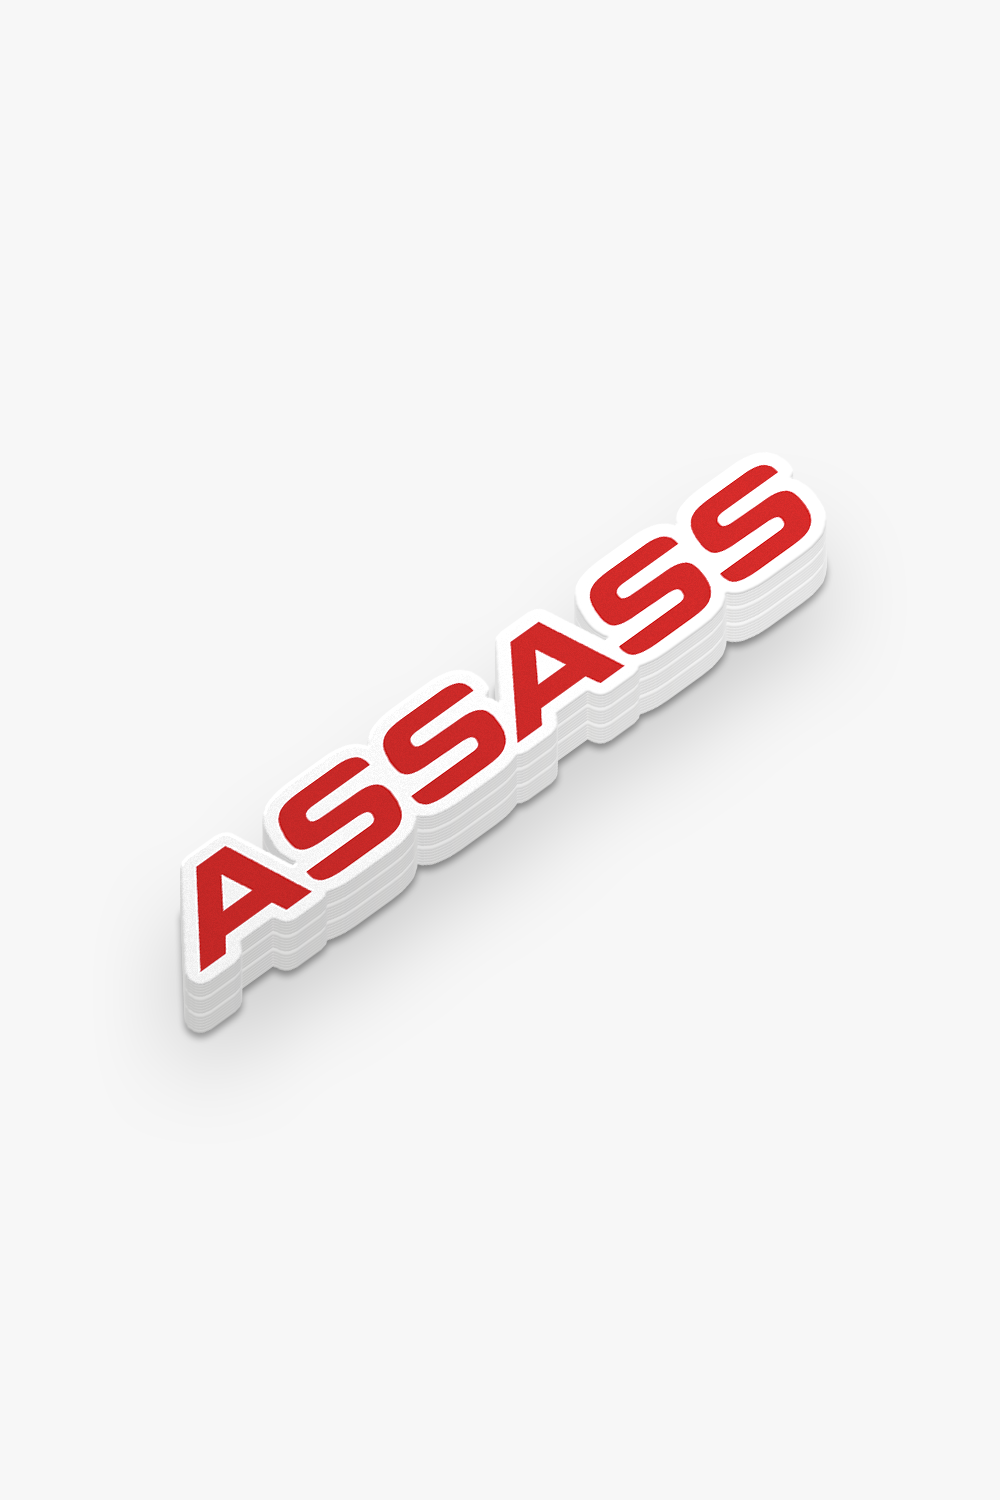 AssAss Sticker